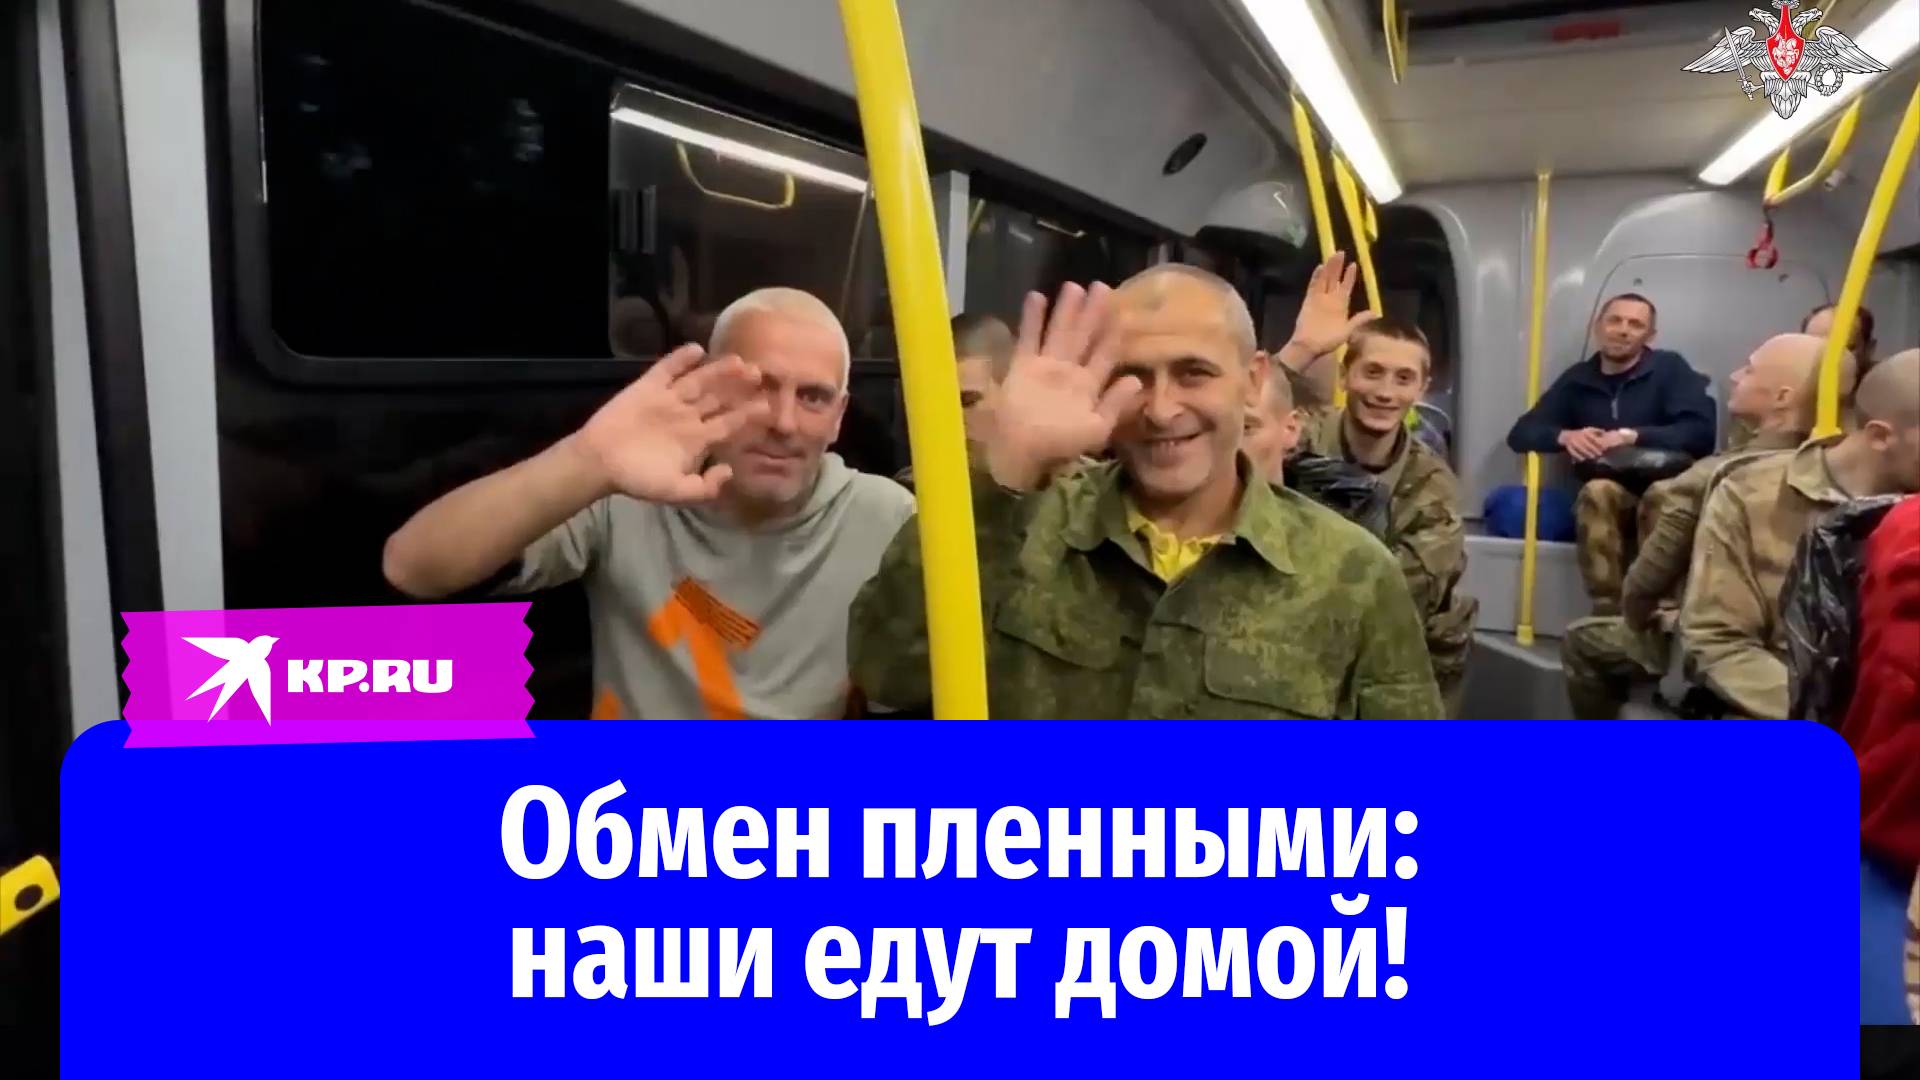 90 военнослужащих вернулись из плена в Россию